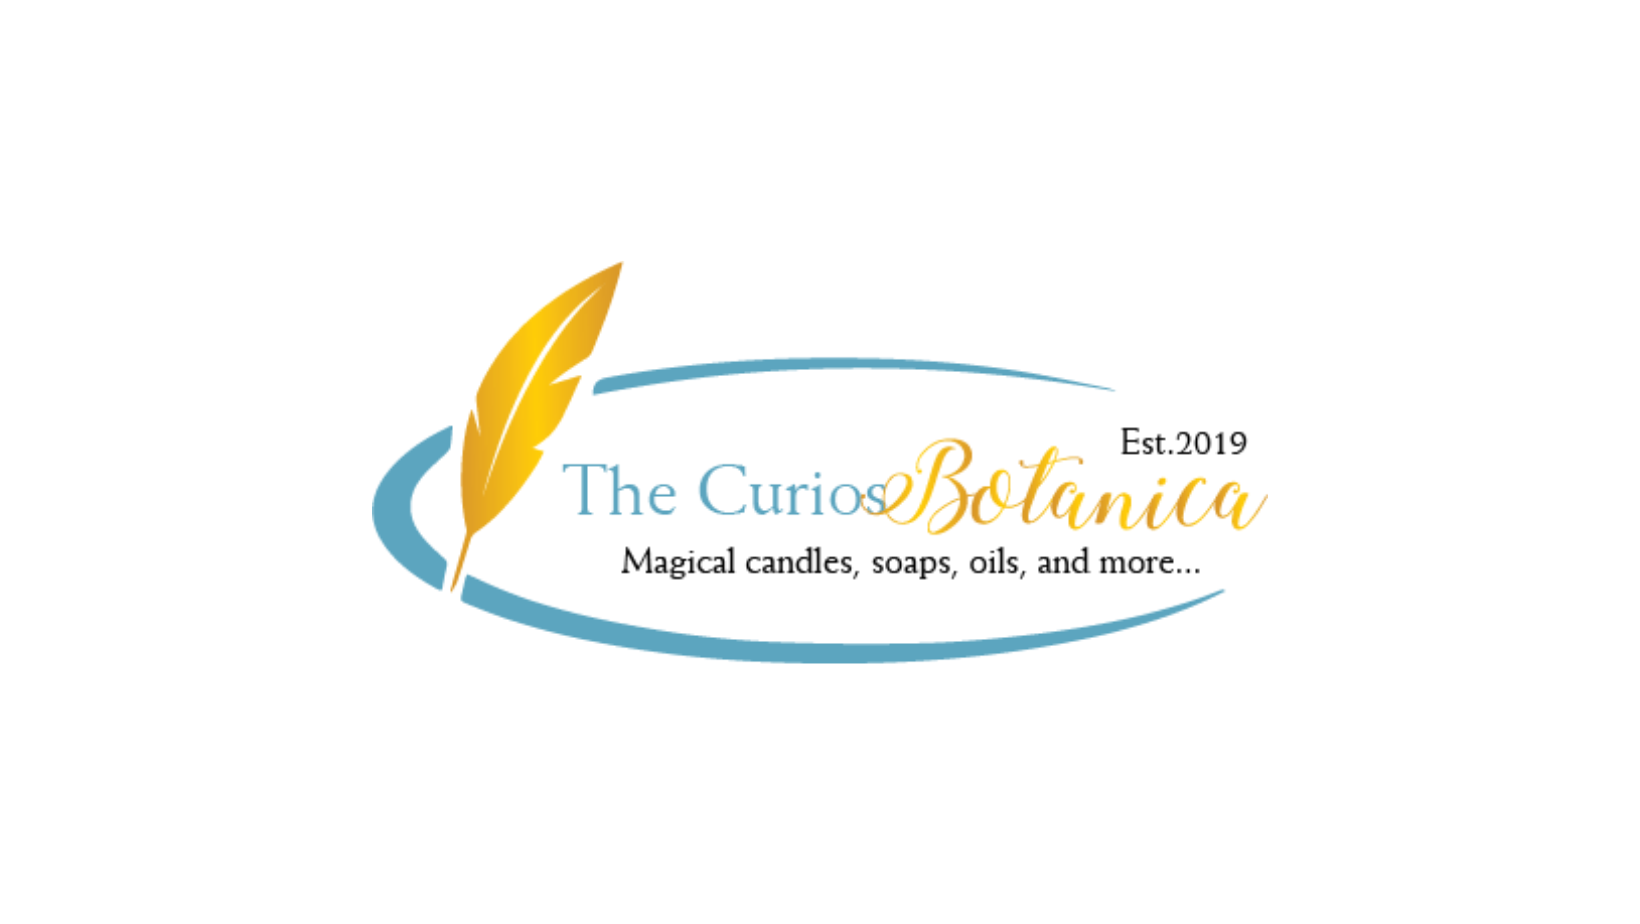 Company logo of The Curios Botanica